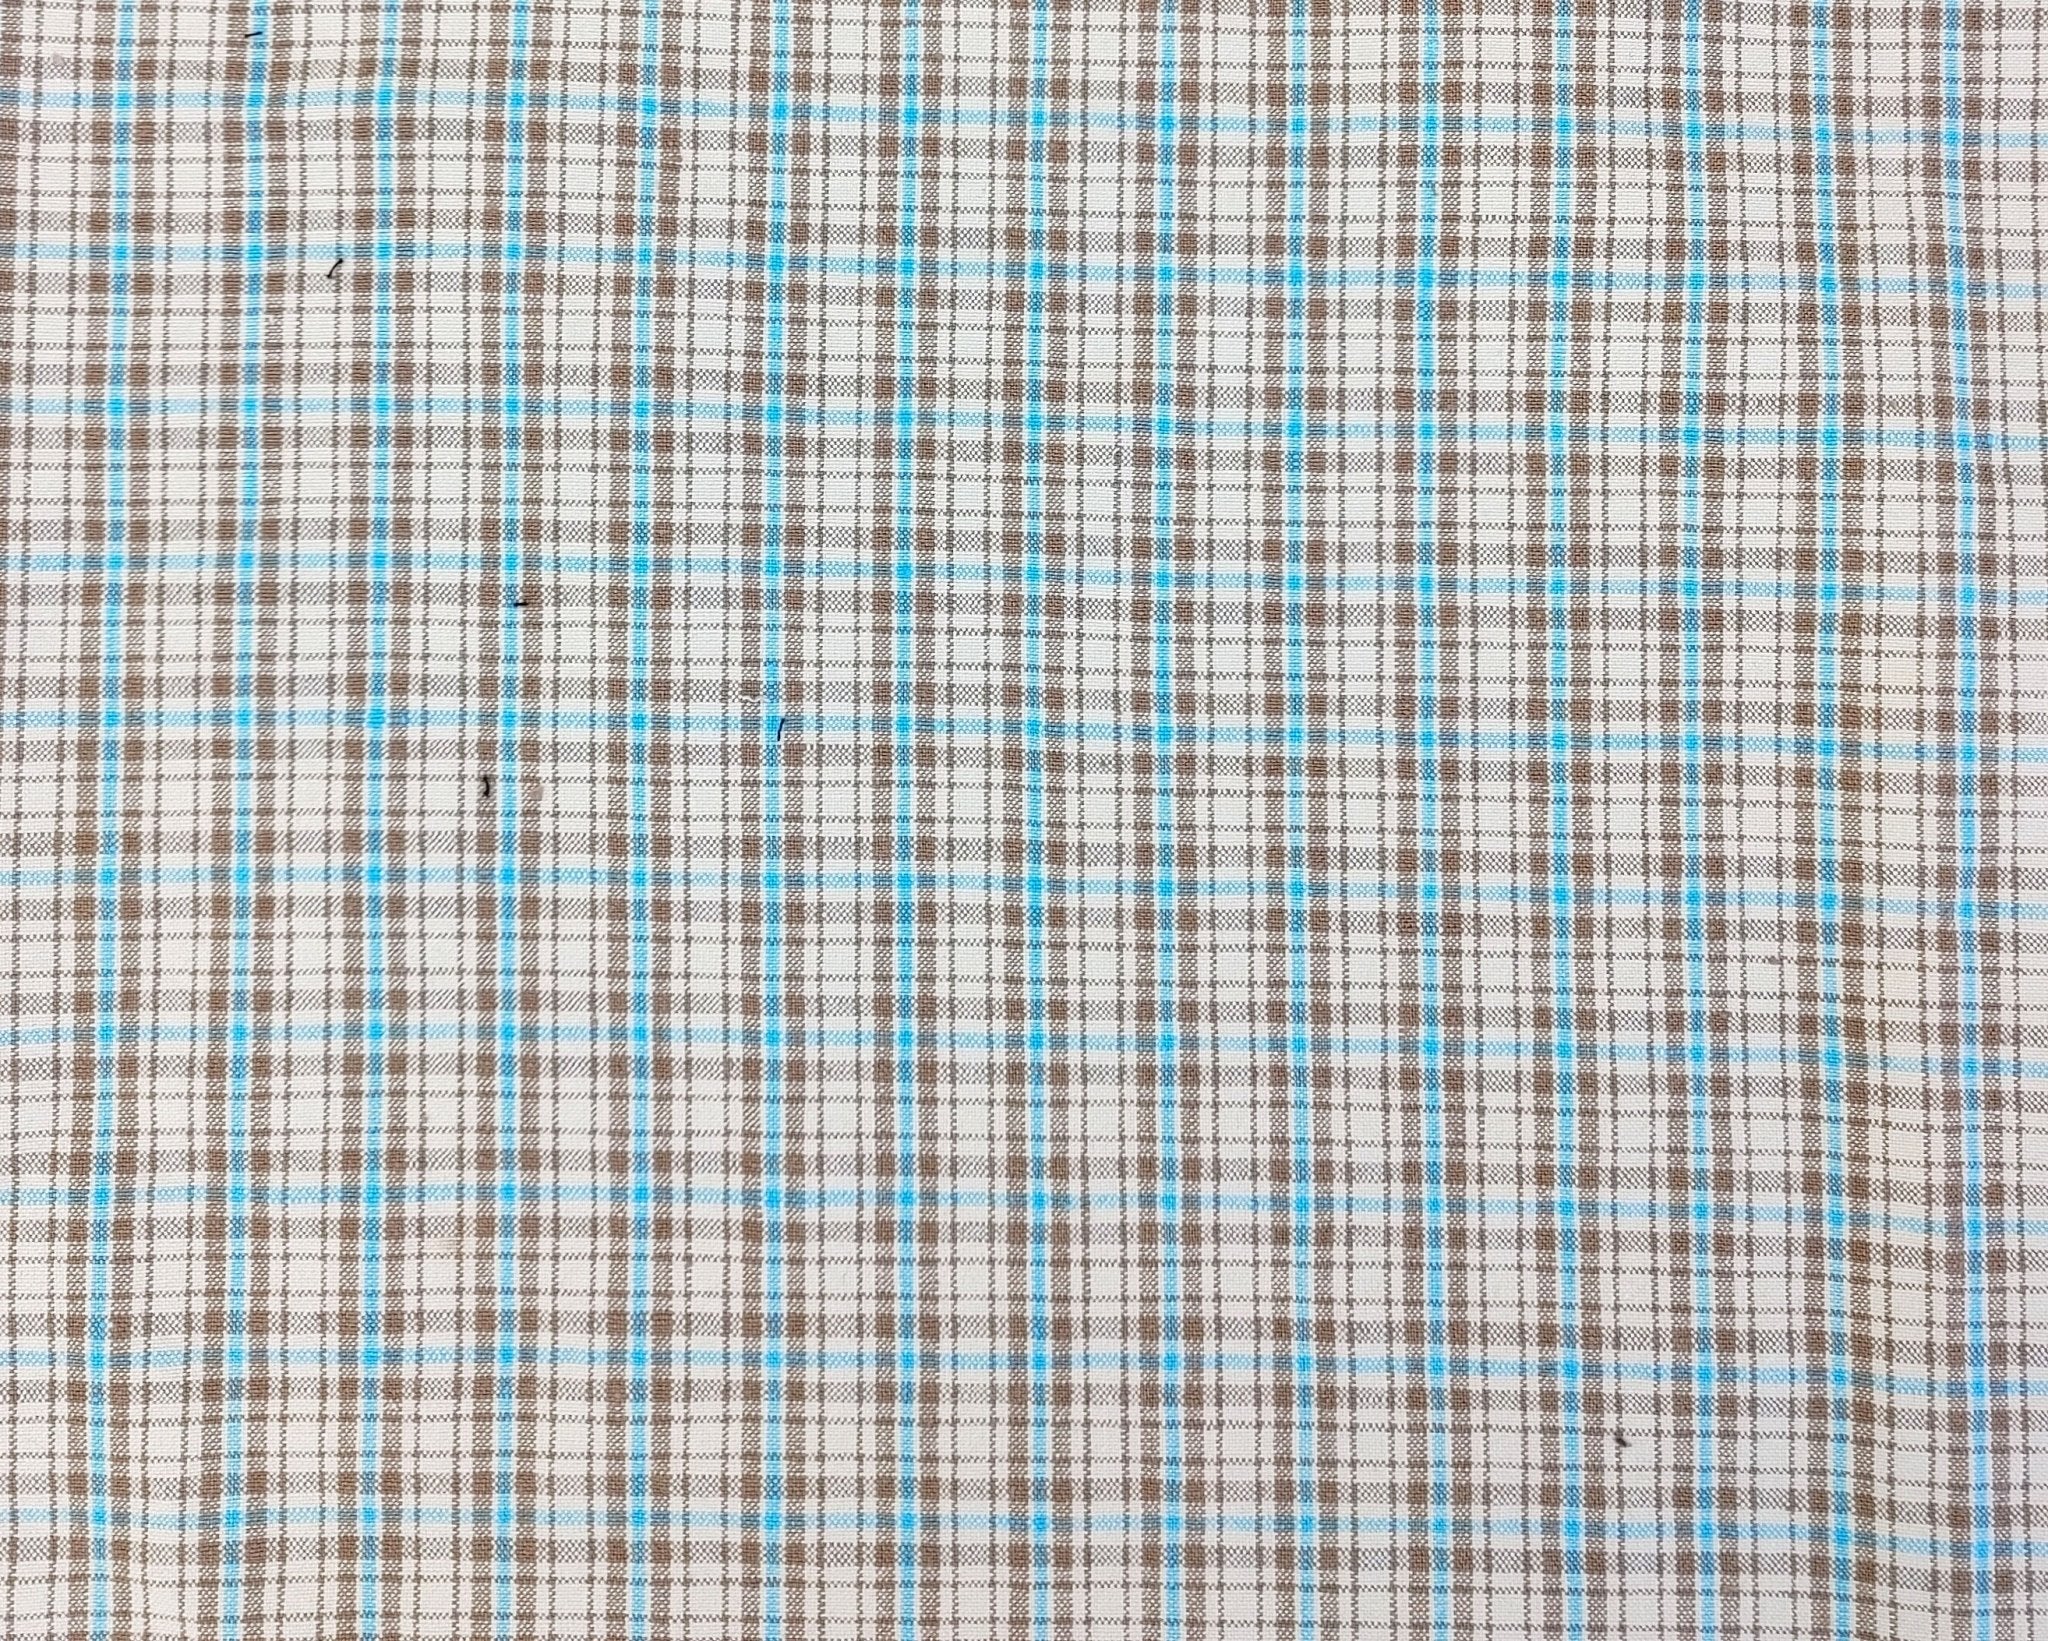 Linen Cotton Plaid Fabric Beige & Blue 7202 - The Linen Lab - Beige